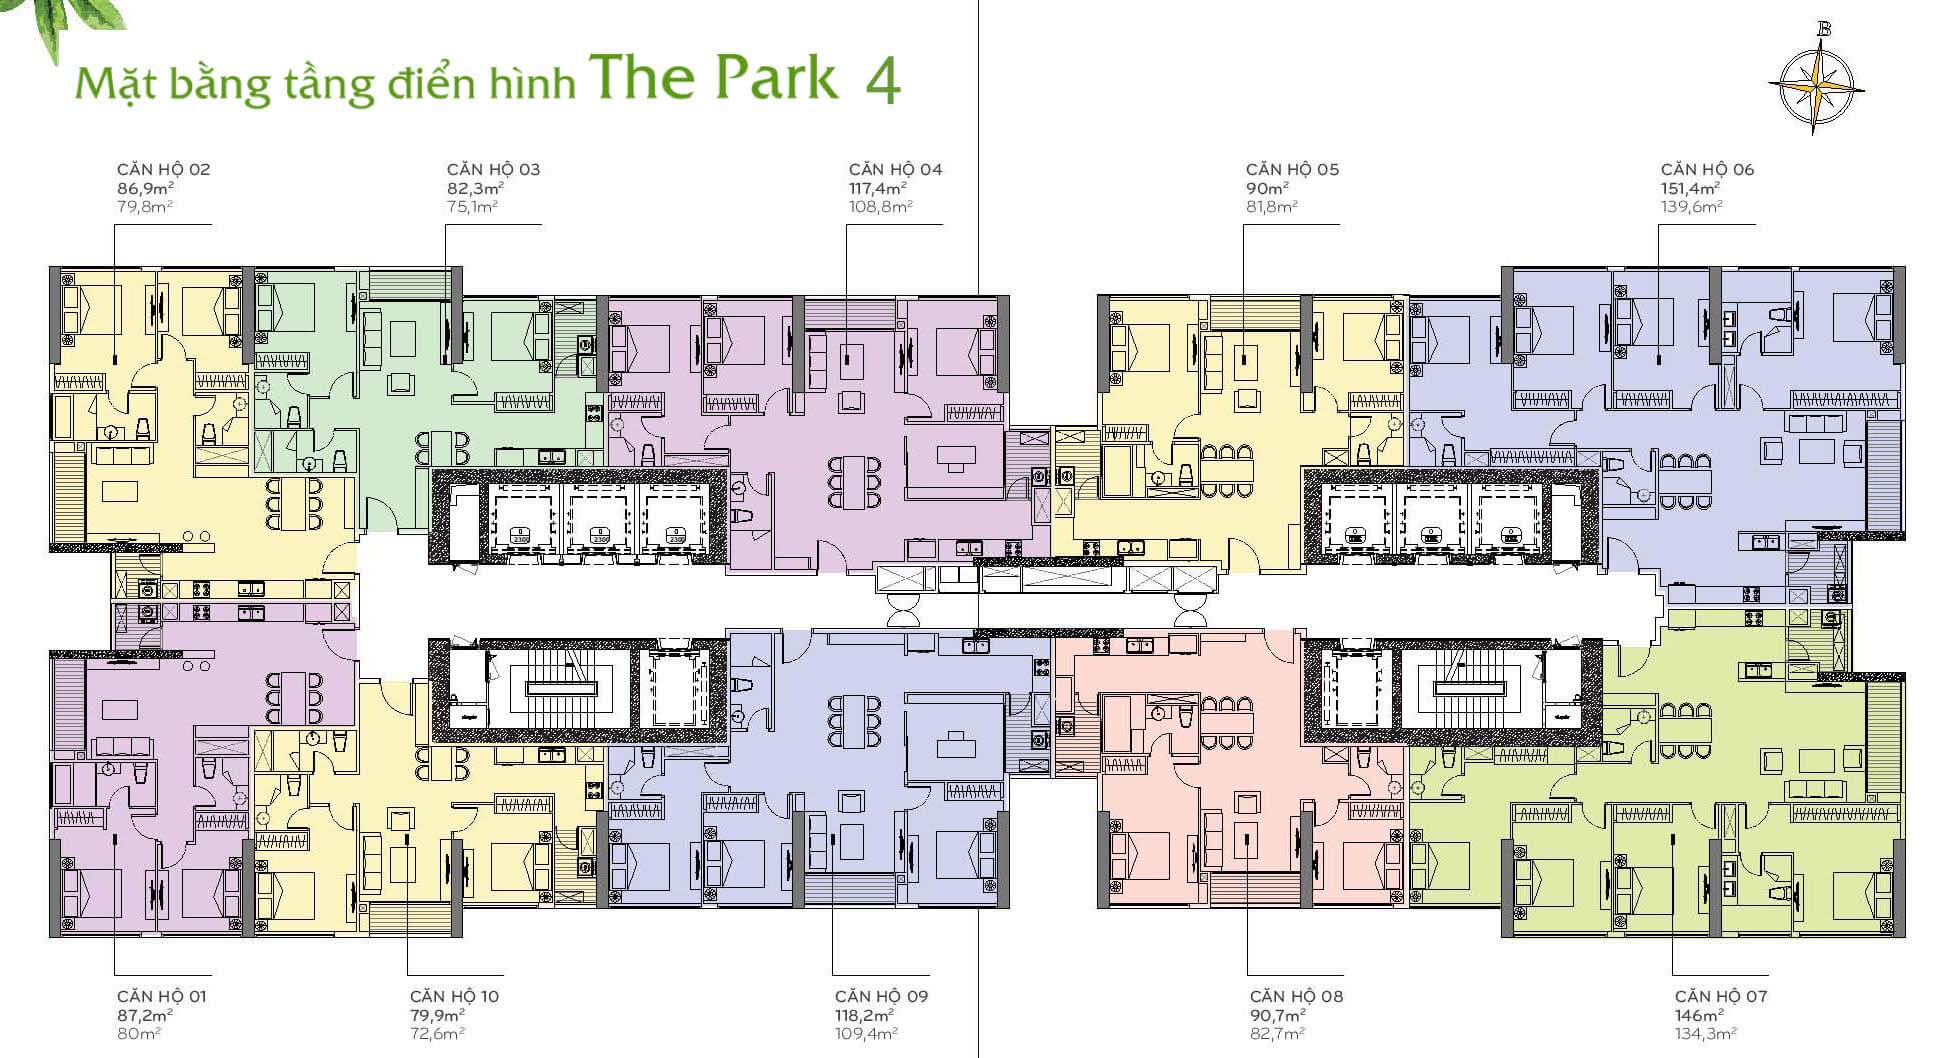 Mặt bằng layout Park 4 Vinhomes tầng điển hình